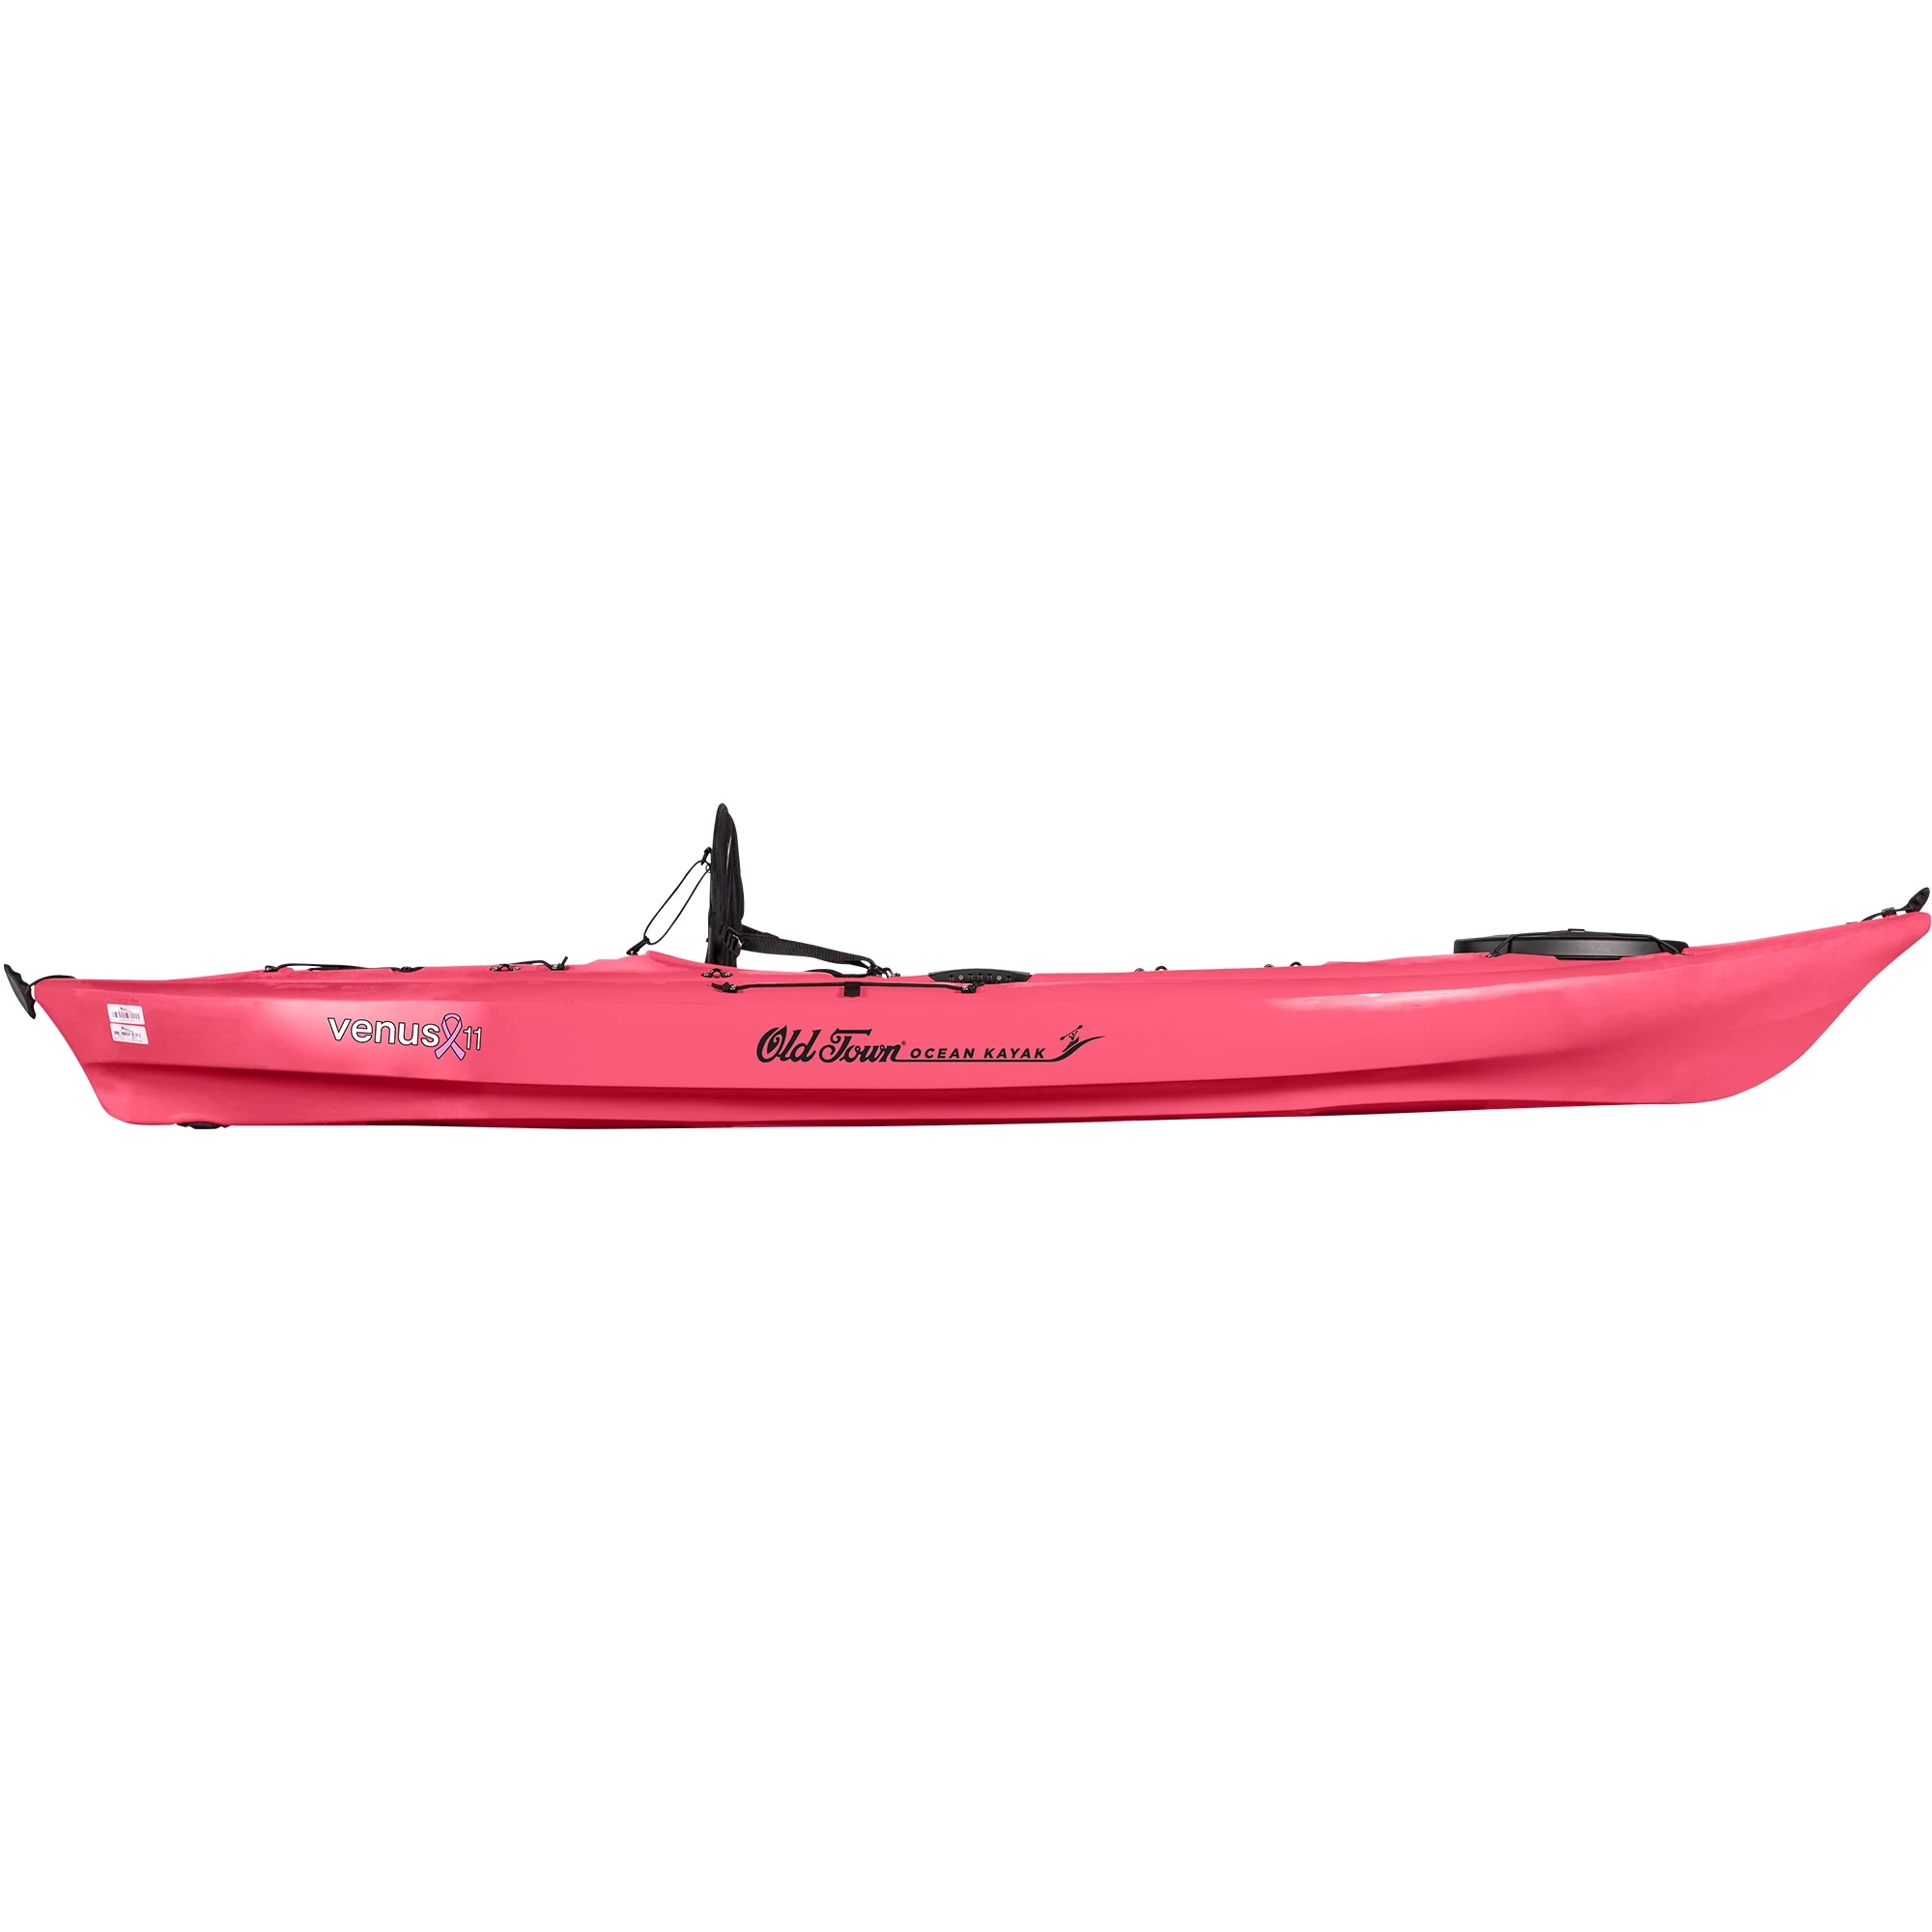 Ocean Kayak Venus 11 - Fuchsia - Side View